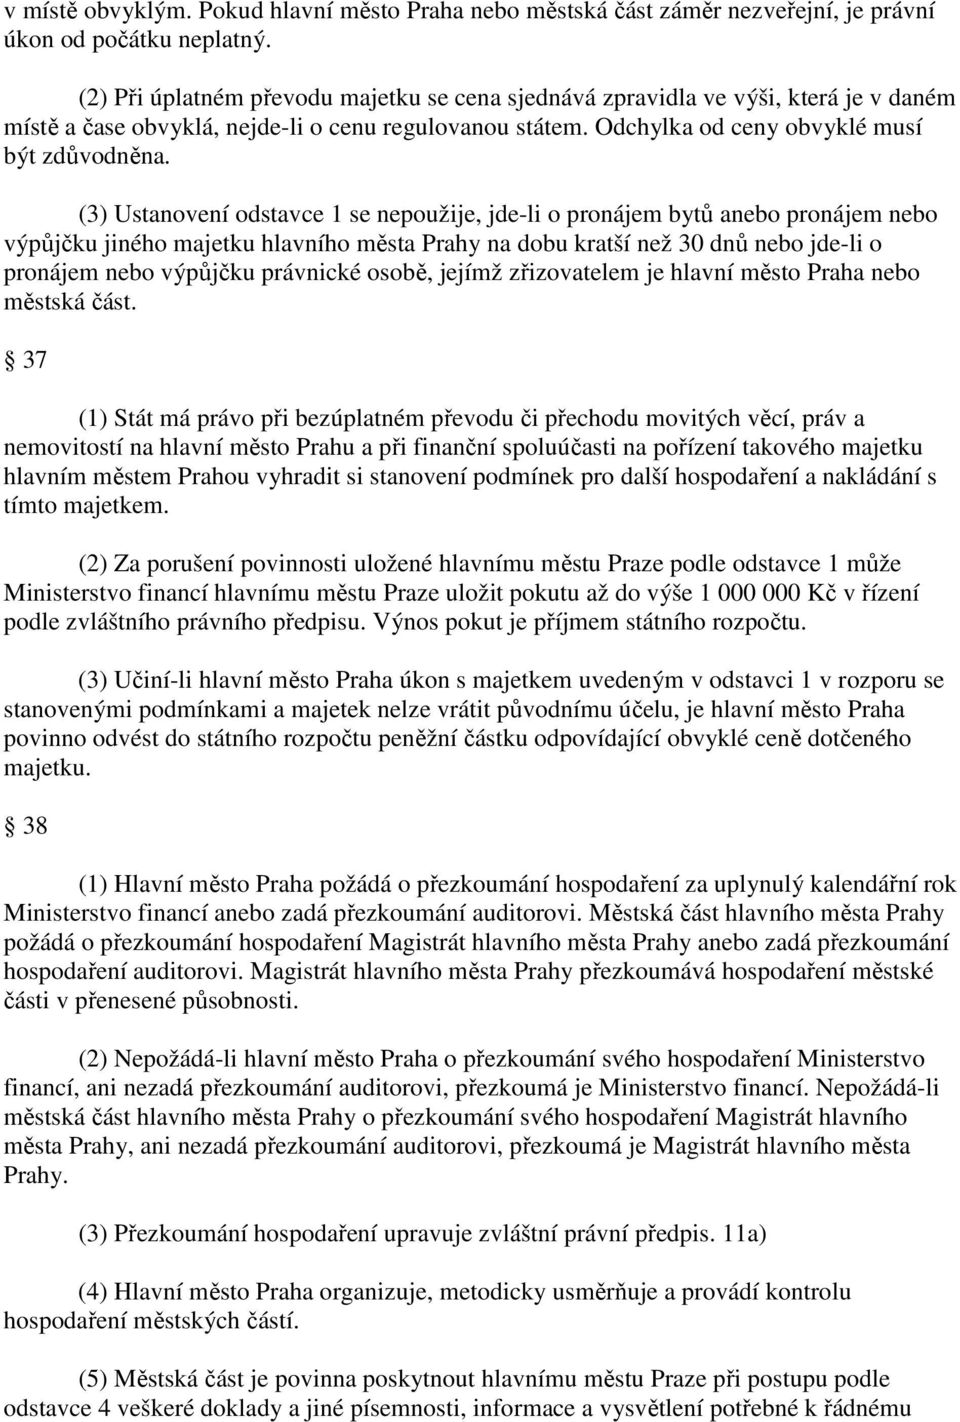 (3) Ustanovení odstavce 1 se nepoužije, jde-li o pronájem bytů anebo pronájem nebo výpůjčku jiného majetku hlavního města Prahy na dobu kratší než 30 dnů nebo jde-li o pronájem nebo výpůjčku